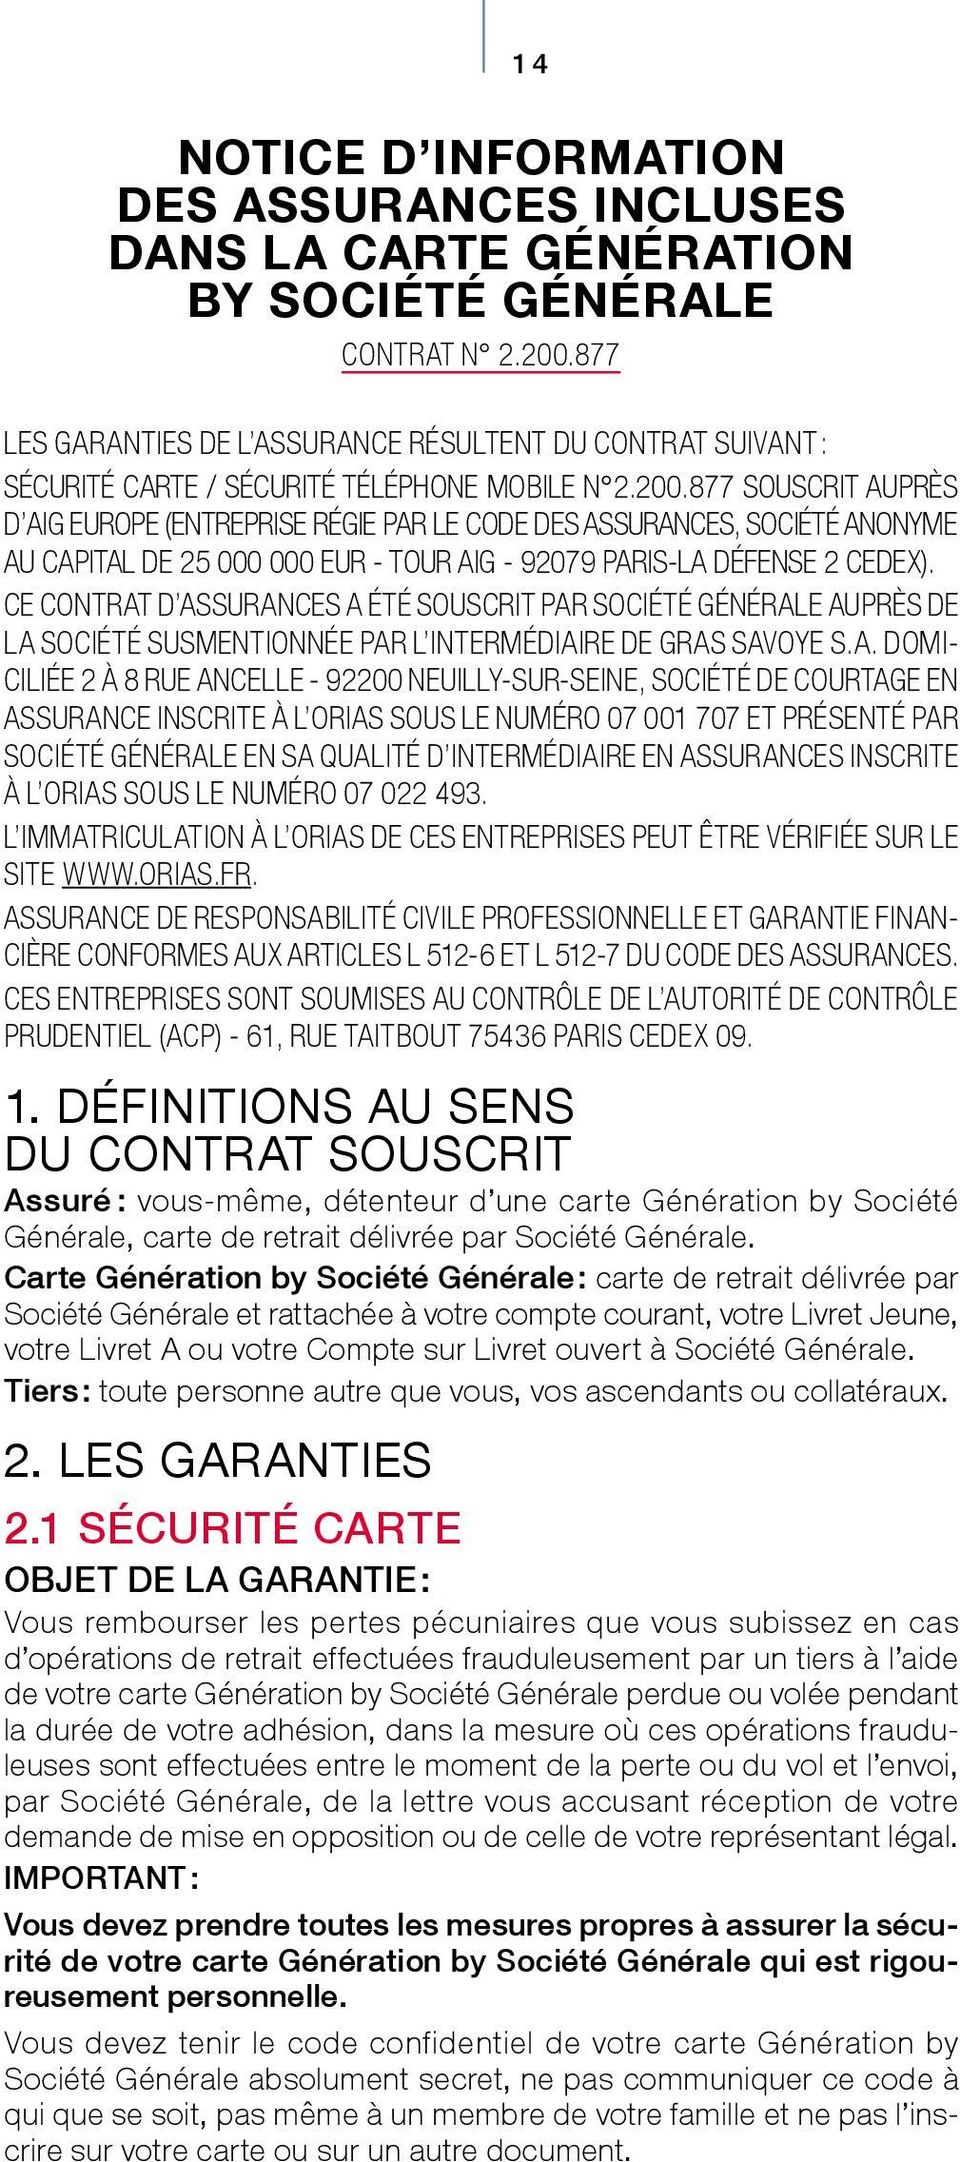 877 SOUSCRIT AUPRÈS D AIG EUROPE (ENTREPRISE RÉGIE PAR LE CODE DES ASSURANCES, SOCIÉTÉ ANONYME AU CAPITAL DE 25 000 000 EUR - TOUR AIG - 92079 PARIS-LA DÉFENSE 2 CEDEX).